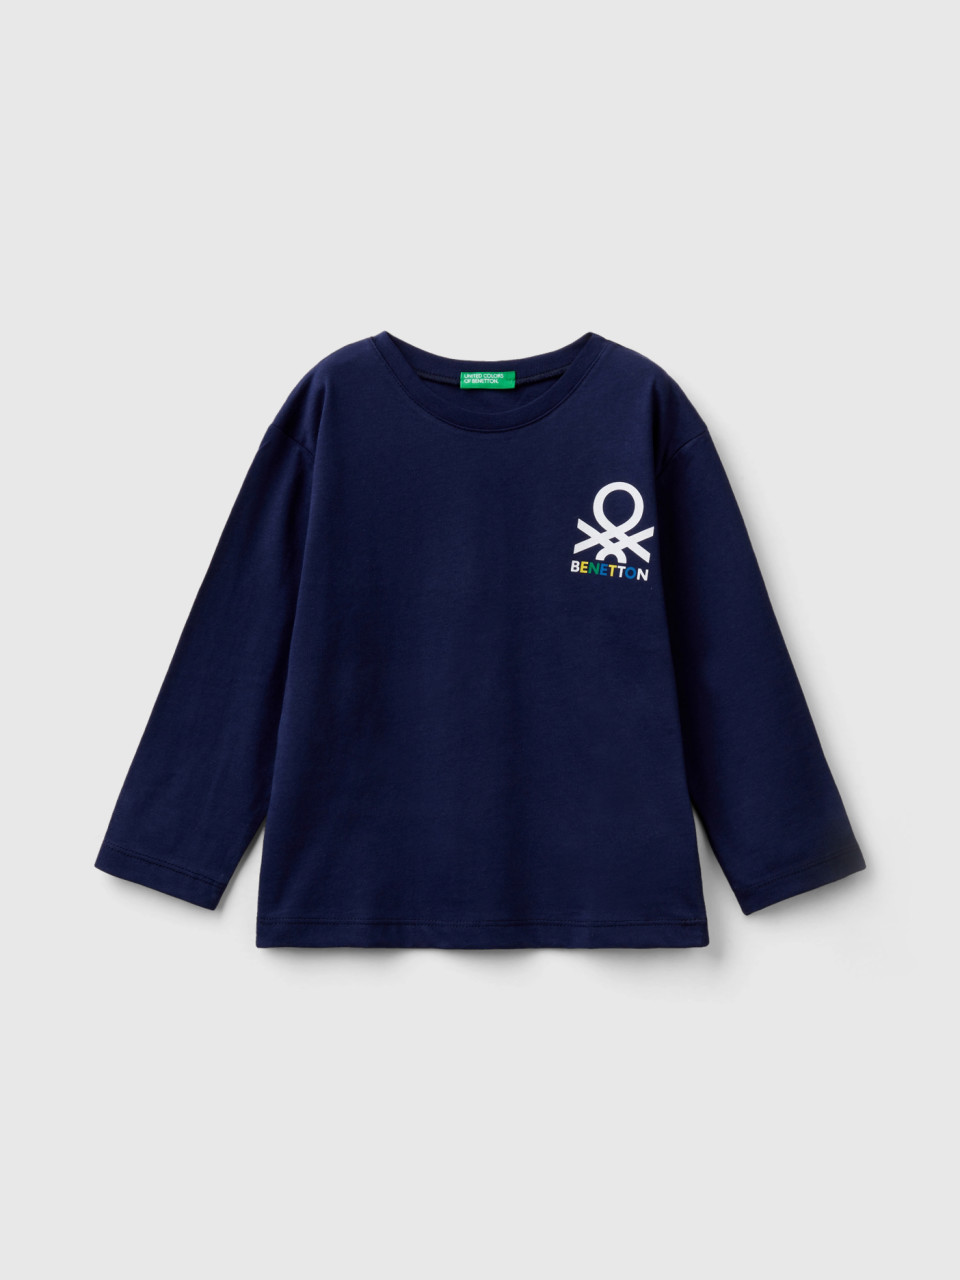 Benetton, Camiseta De Manga Larga De Algodón Orgánico, Azul Oscuro, Niños